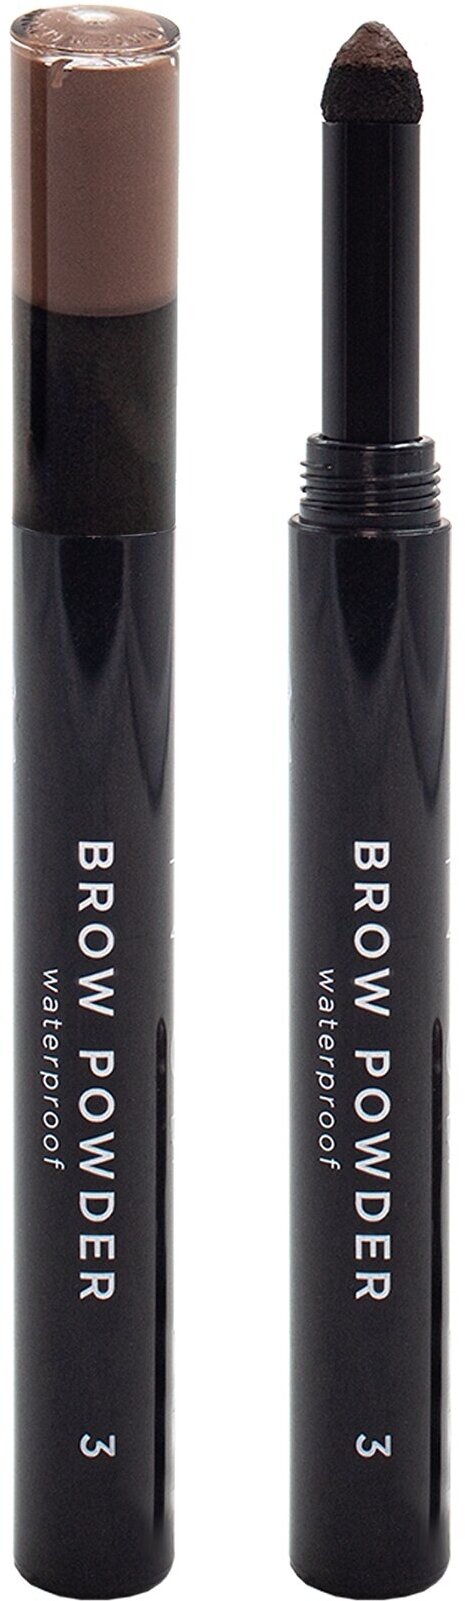 NOUBA Тени-карандаш для бровей Brow Powder водостойкий, 0,8 г, 3